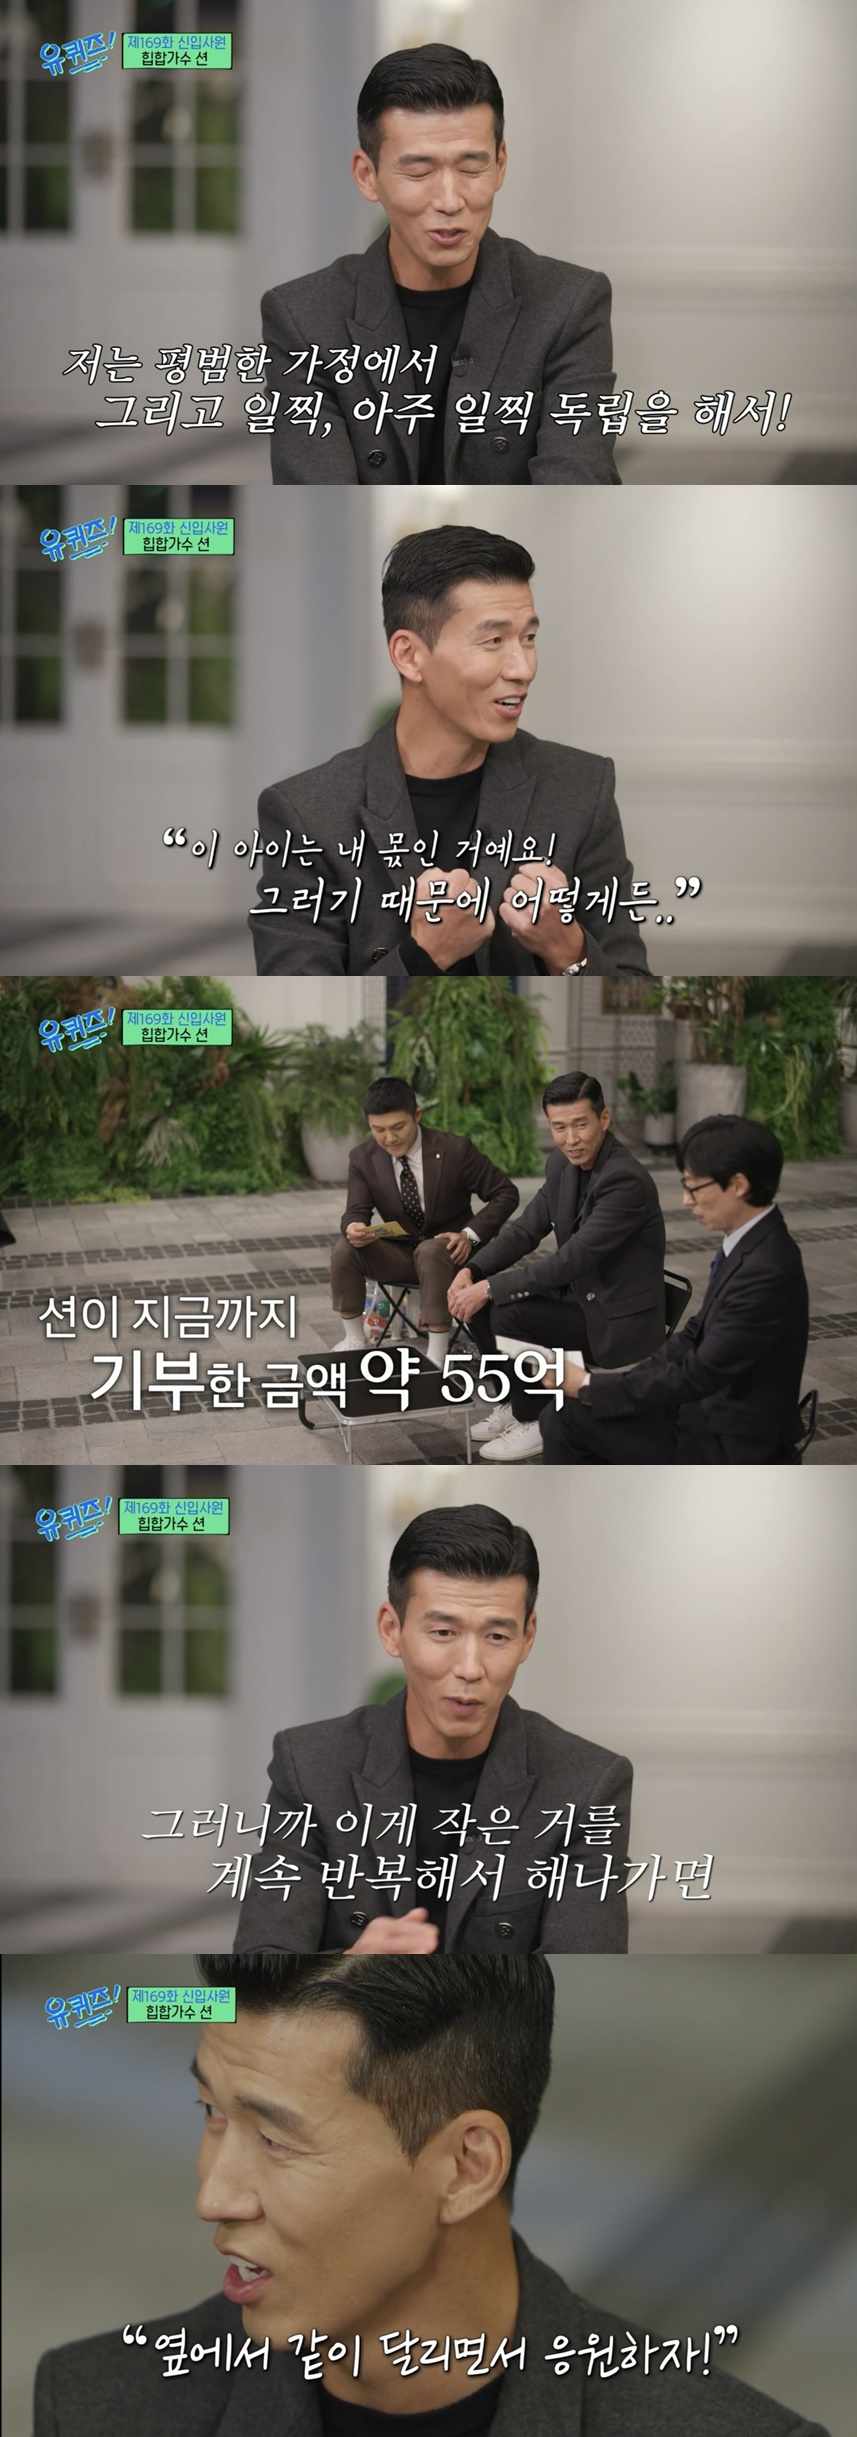 ▲ tvN 예능프로그램 '유퀴즈 온 더 블럭' 방송화면 캡처. 출처ㅣ티빙